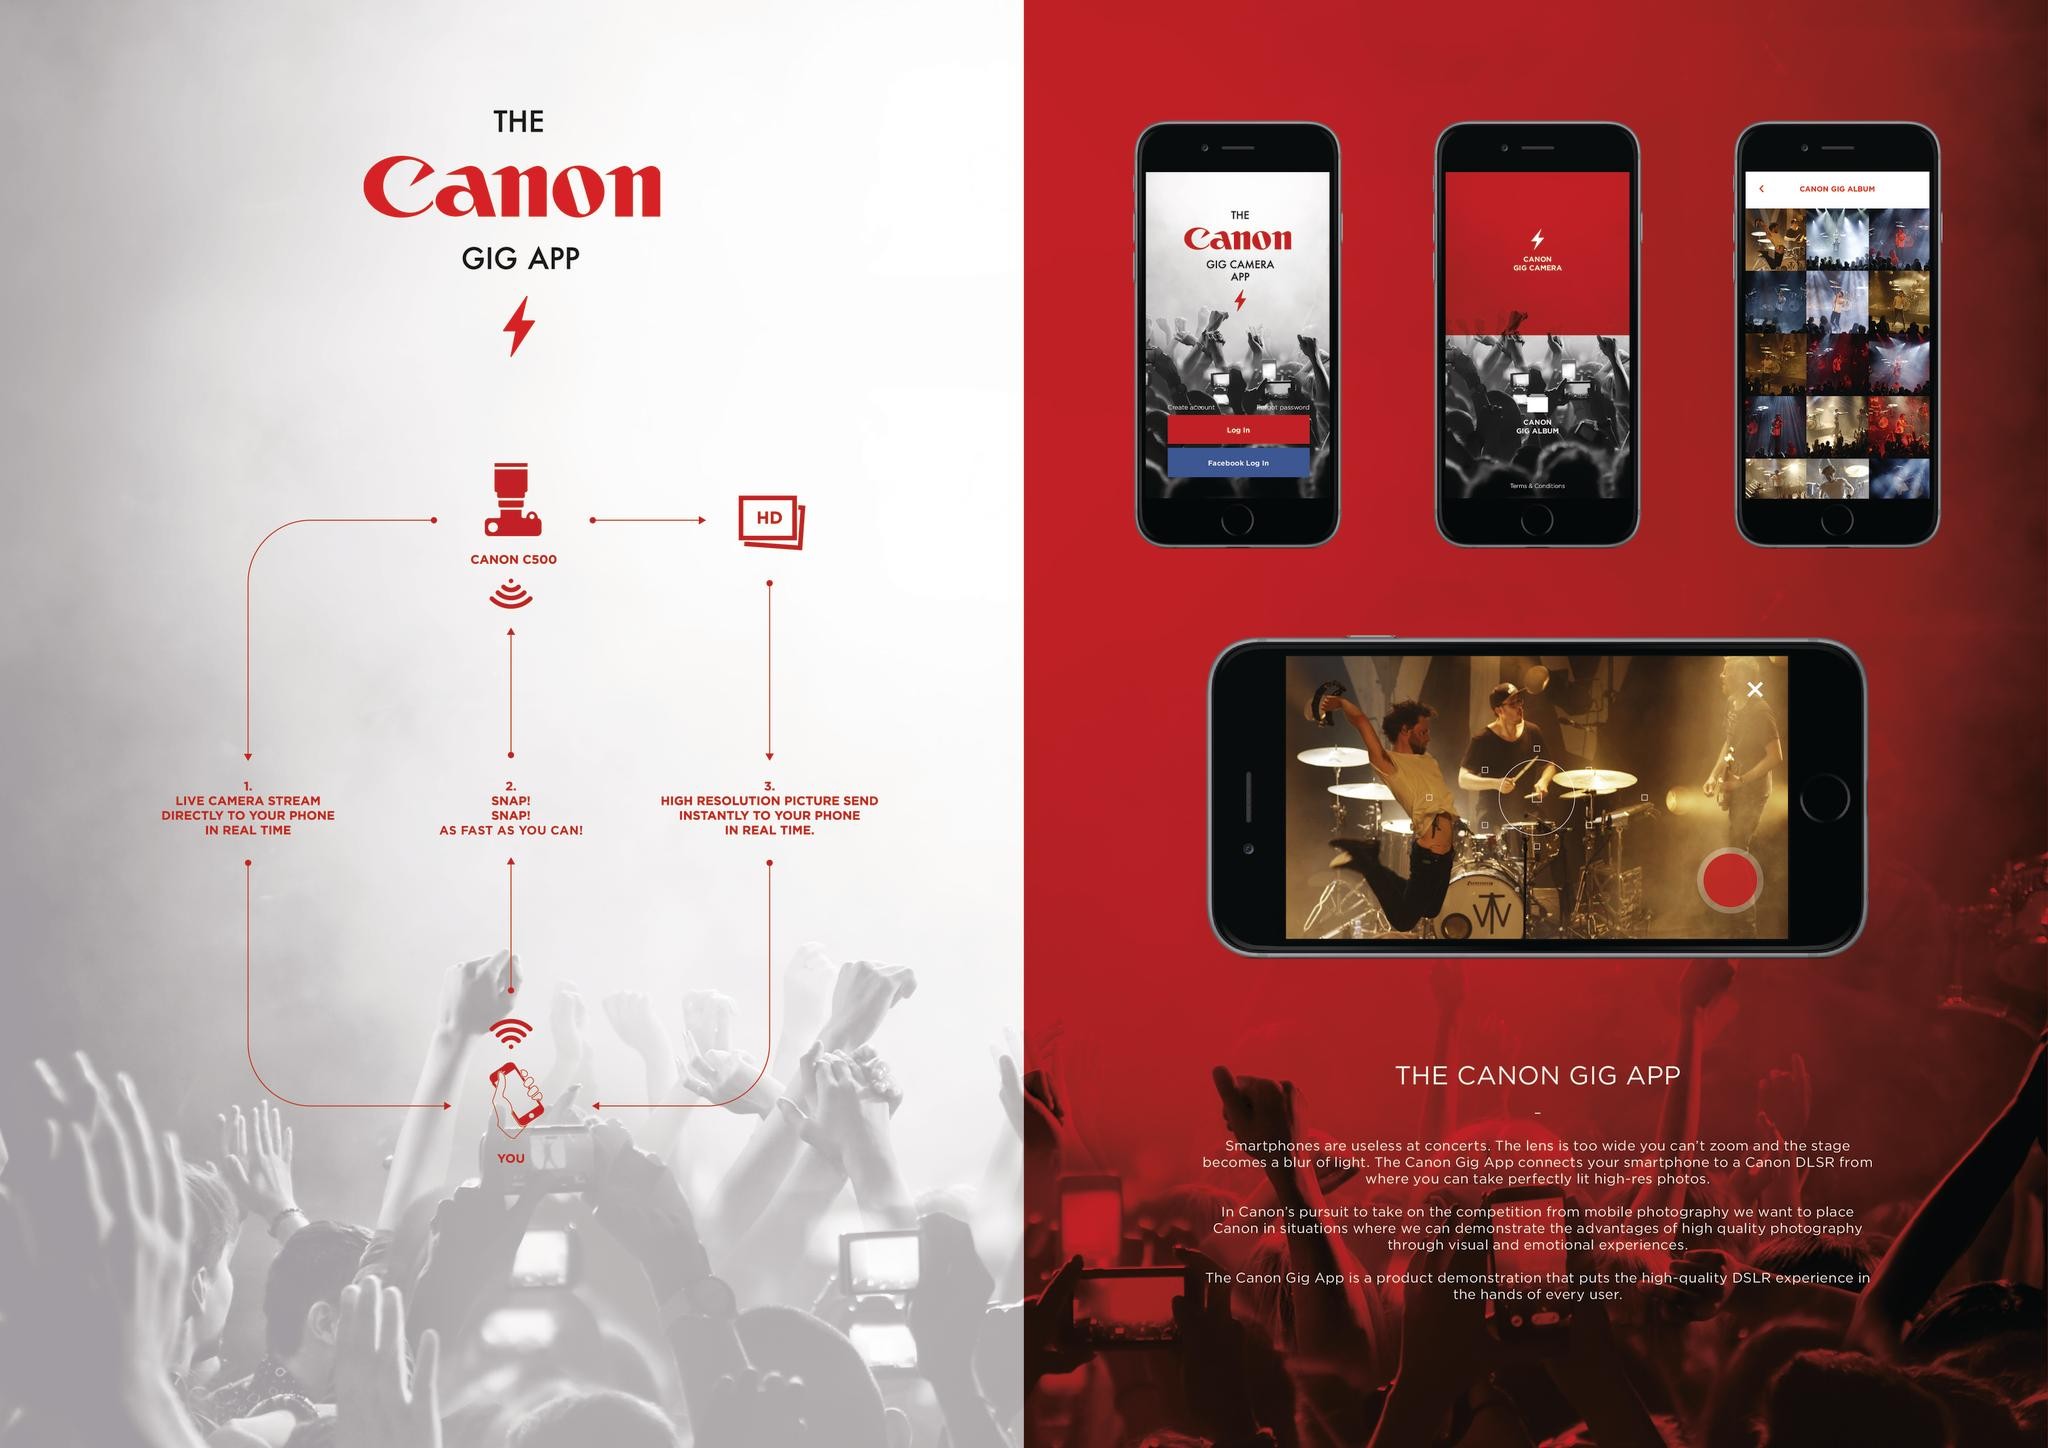 The Canon Gig App